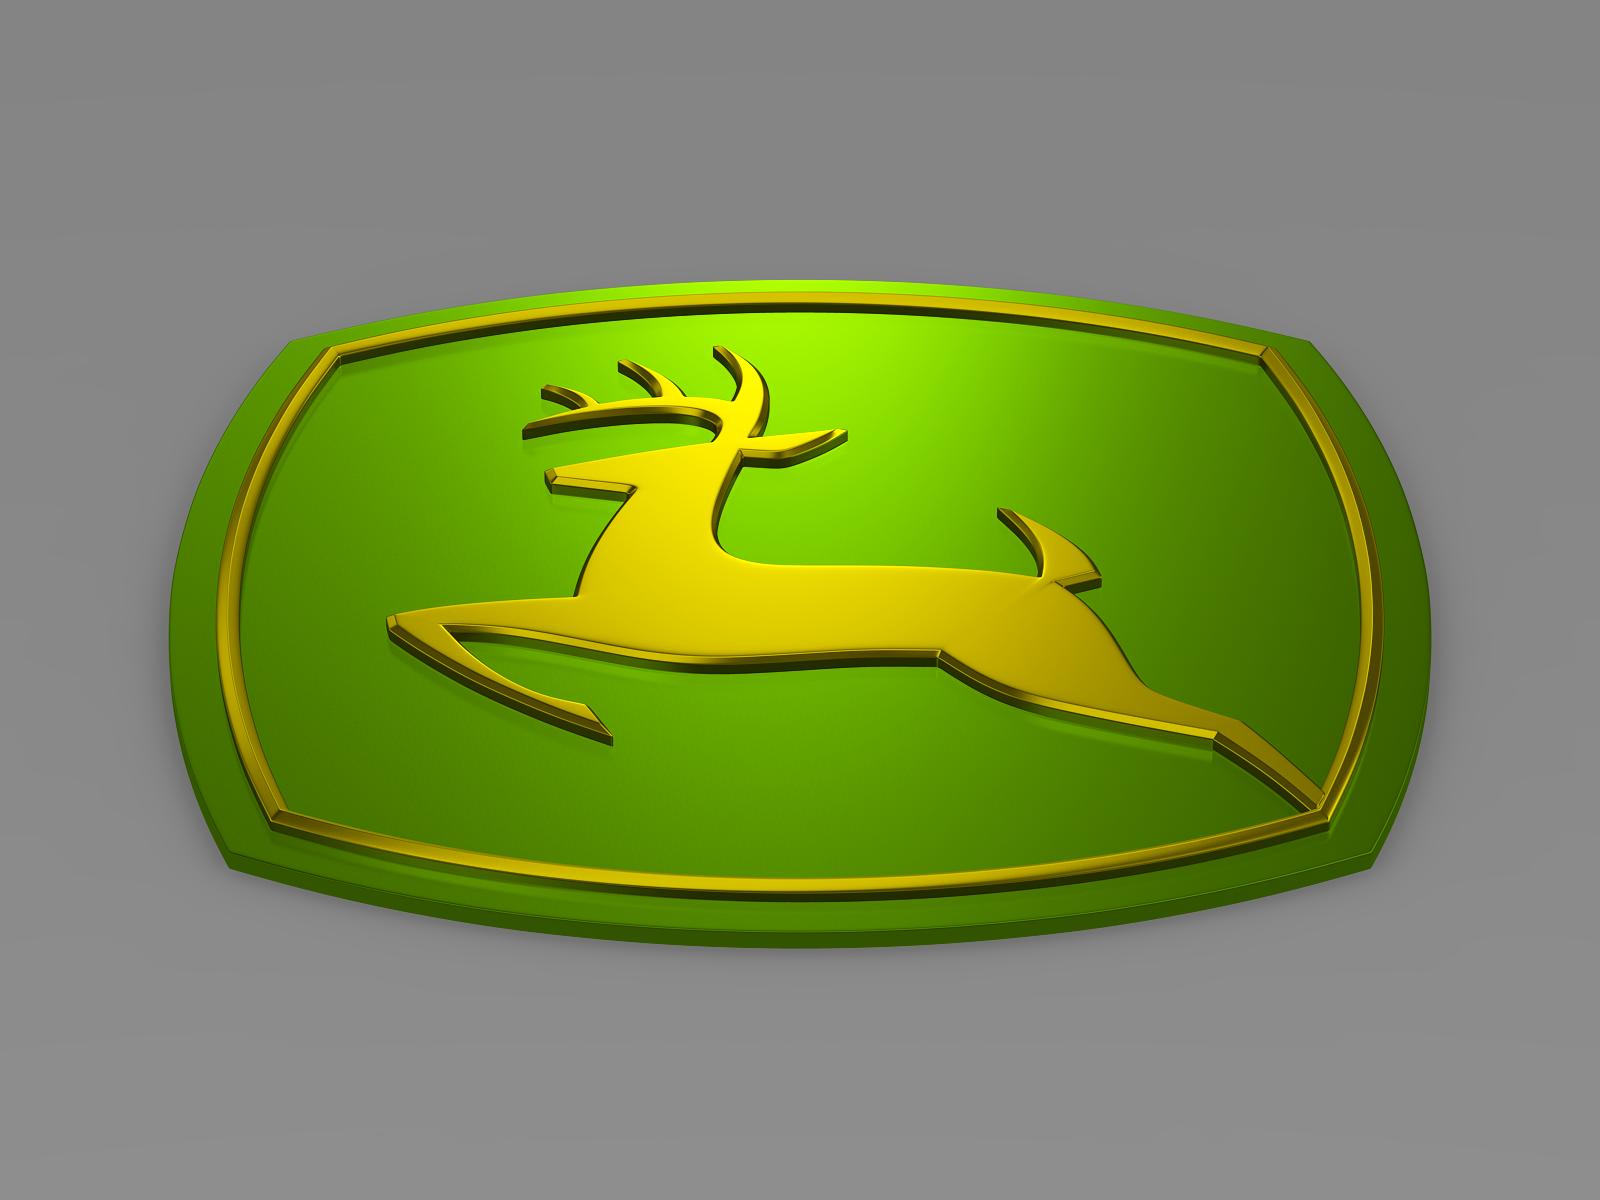 John Deere Logo - 3D Model by 3d_logoman